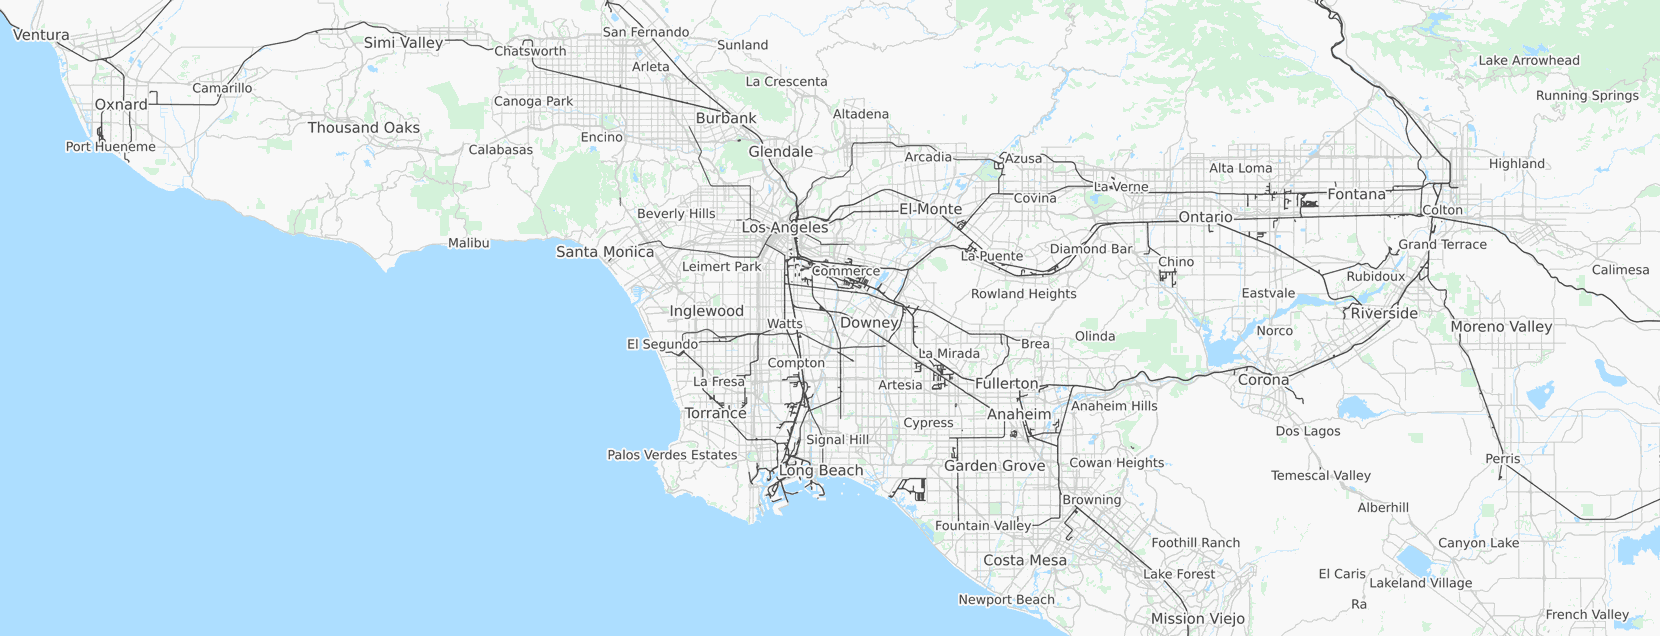 Google Map of LA